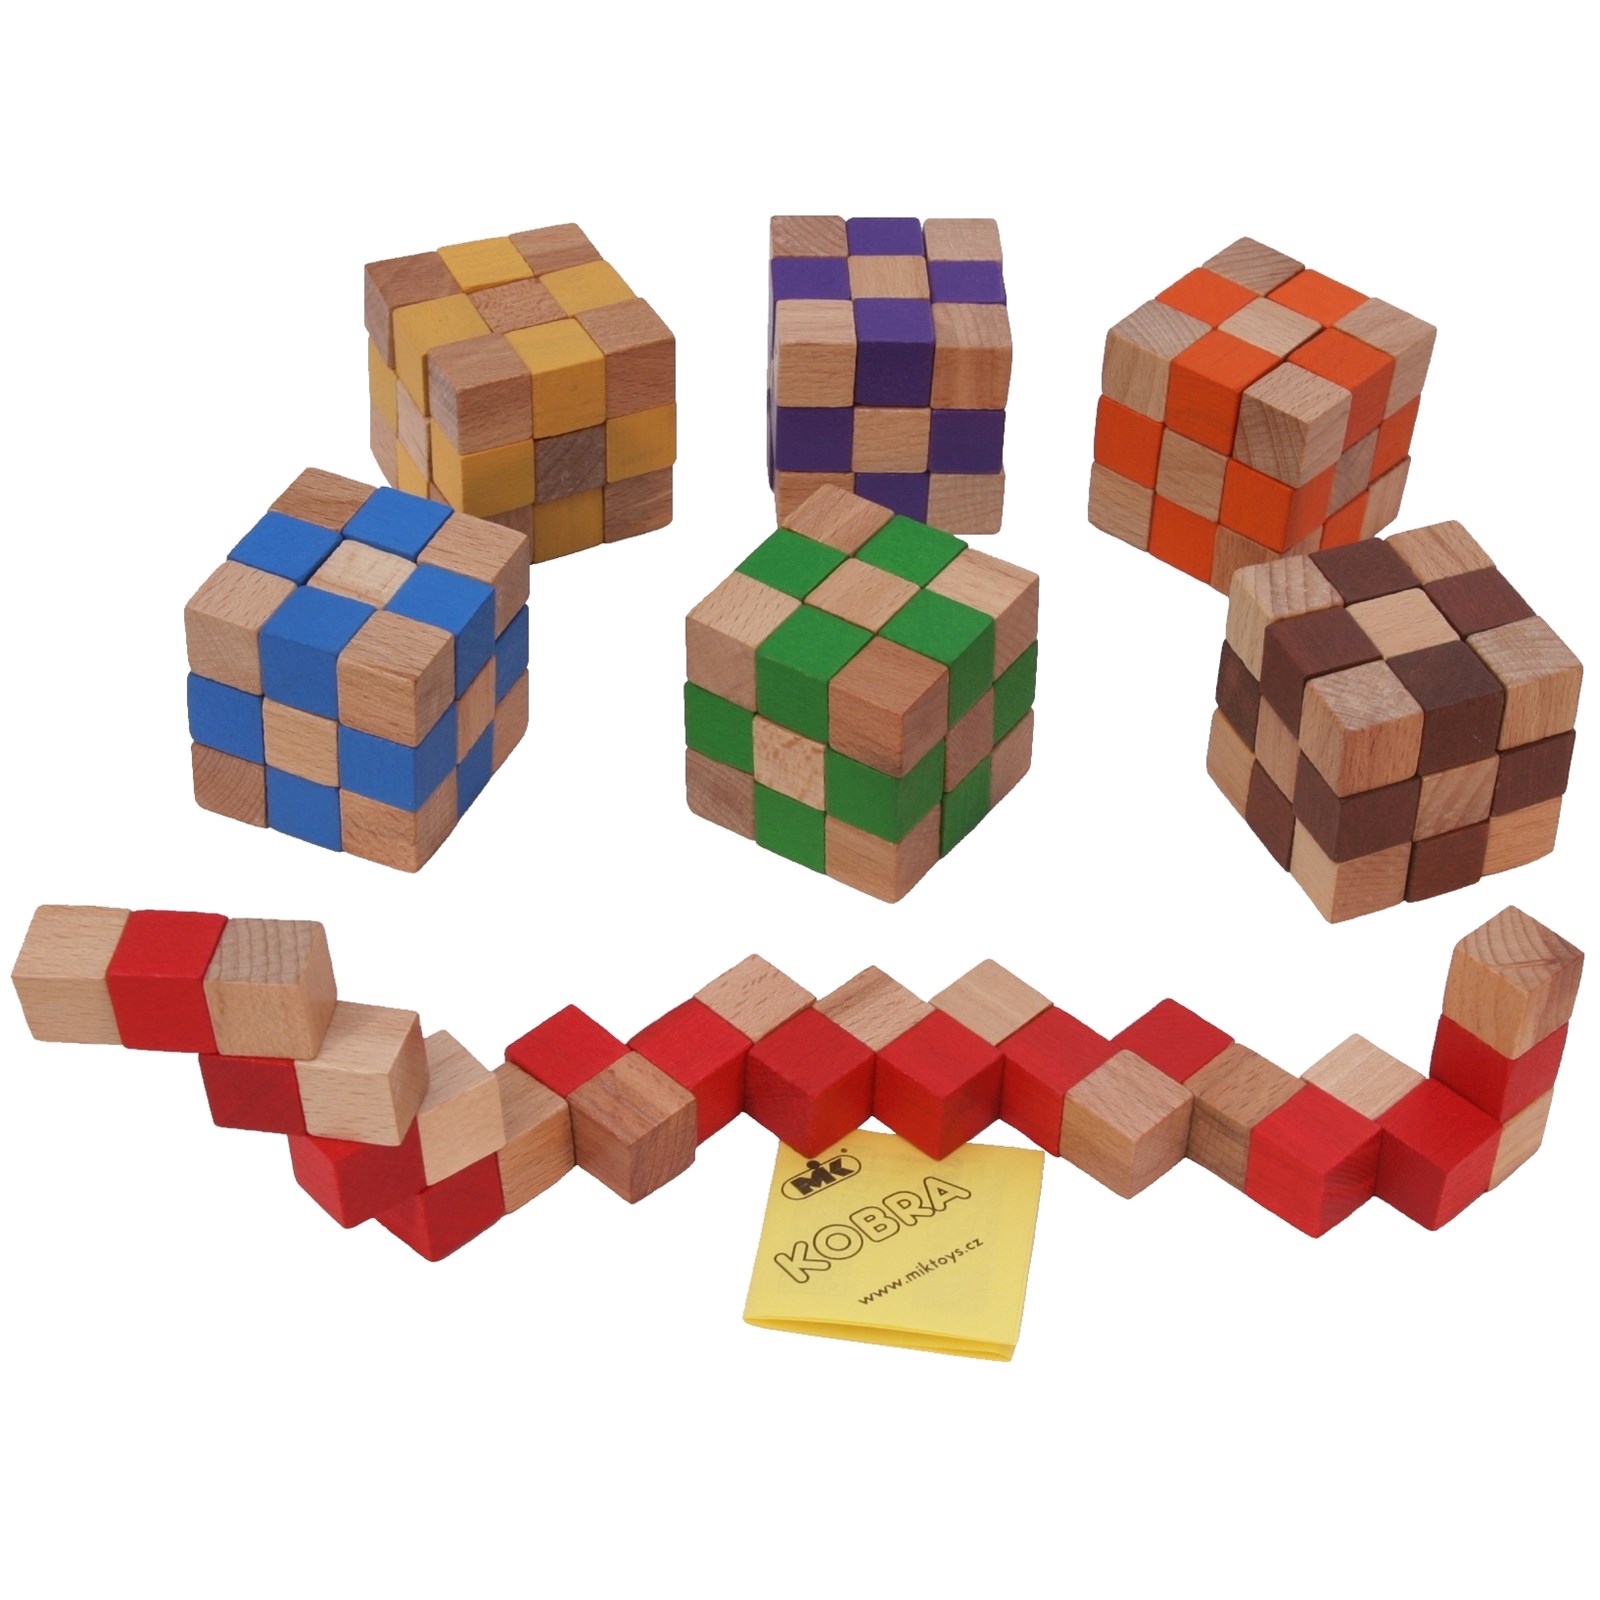 Кобра куб. Деревянная головоломка куб. Деревянная головоломка красный куб. Kairstos-Cube деревянная головоломка. Cobra Cubes настольная игра.